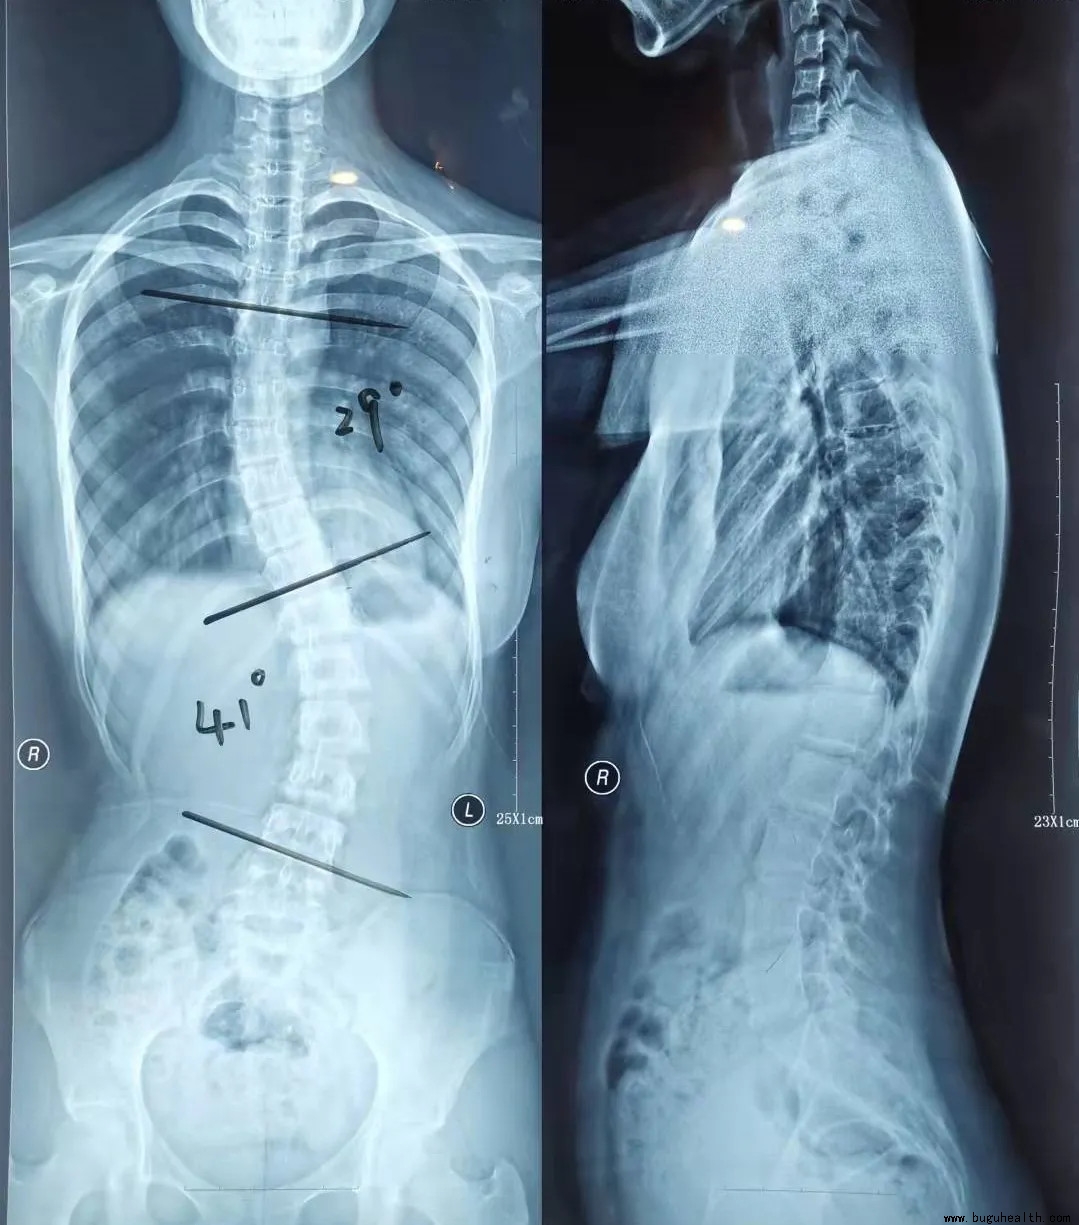 人体脊椎正常的曲度-图库-五毛网